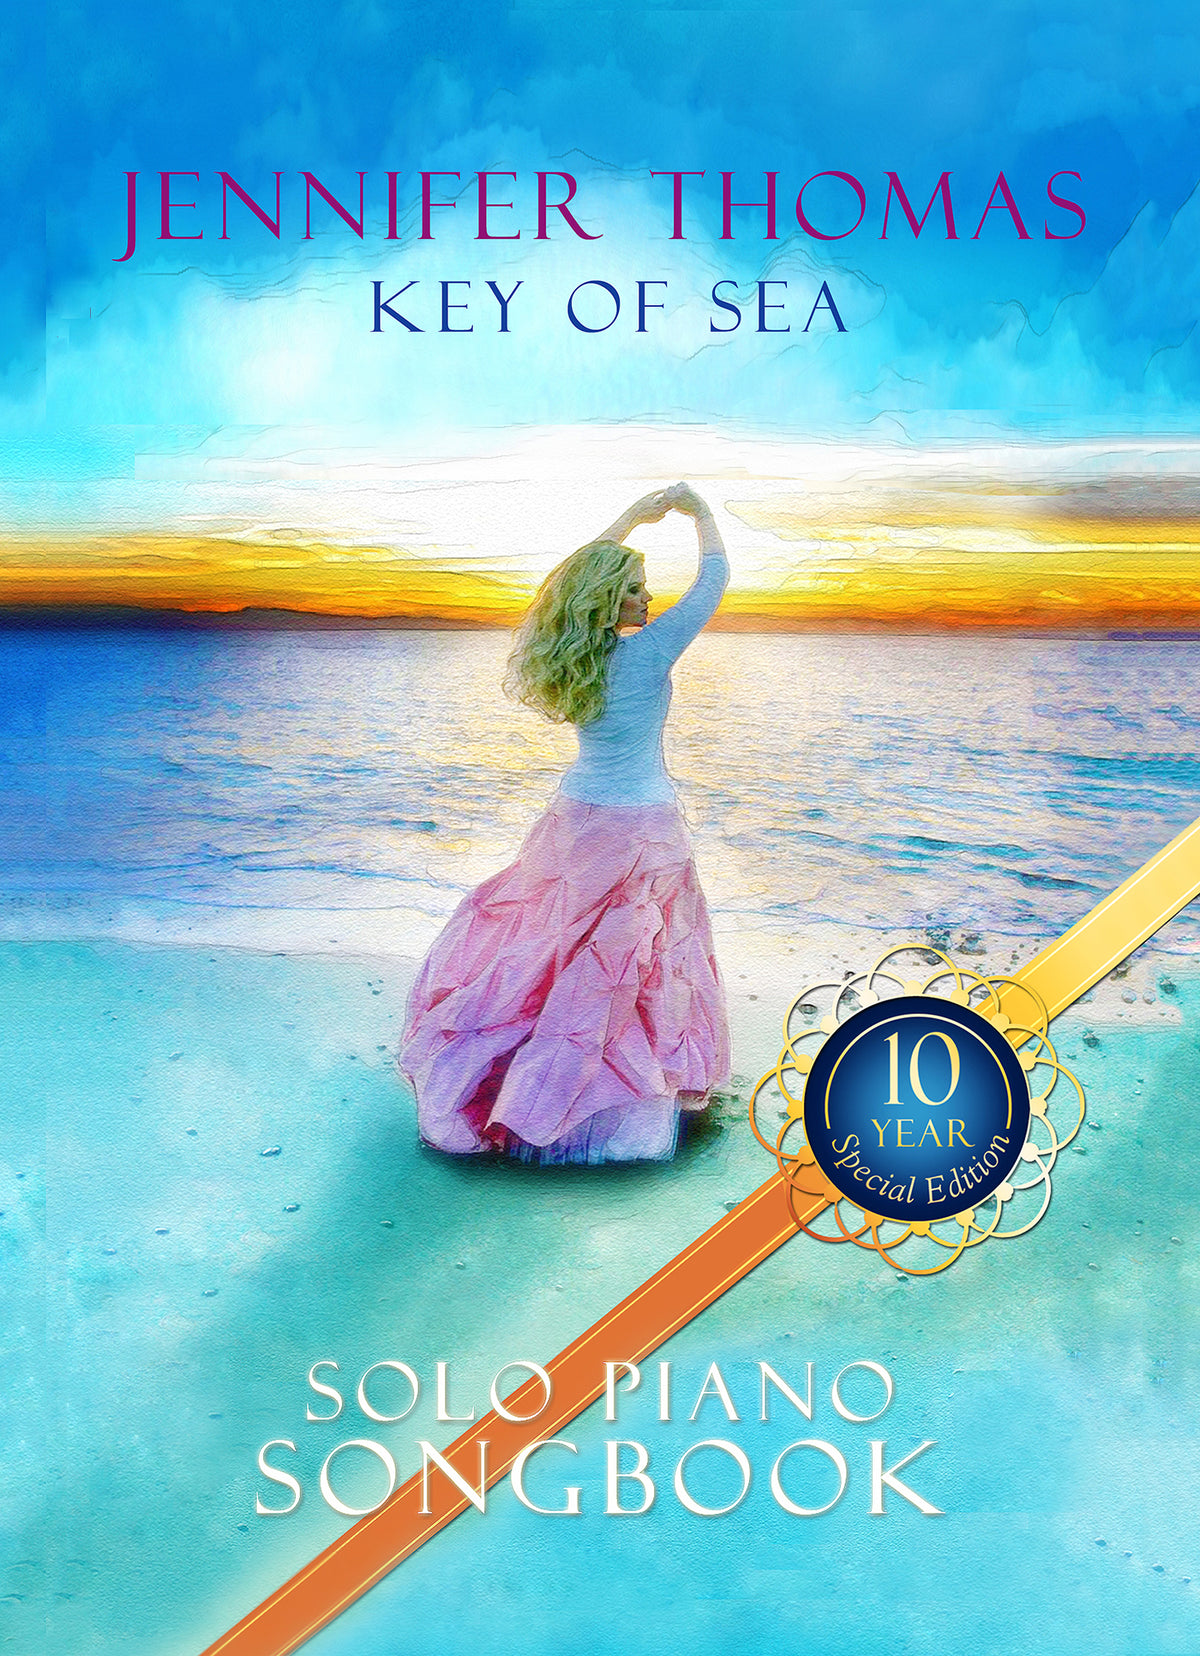 Key of Sea (Edición especial de 10 años) Cancionero digital para piano solo